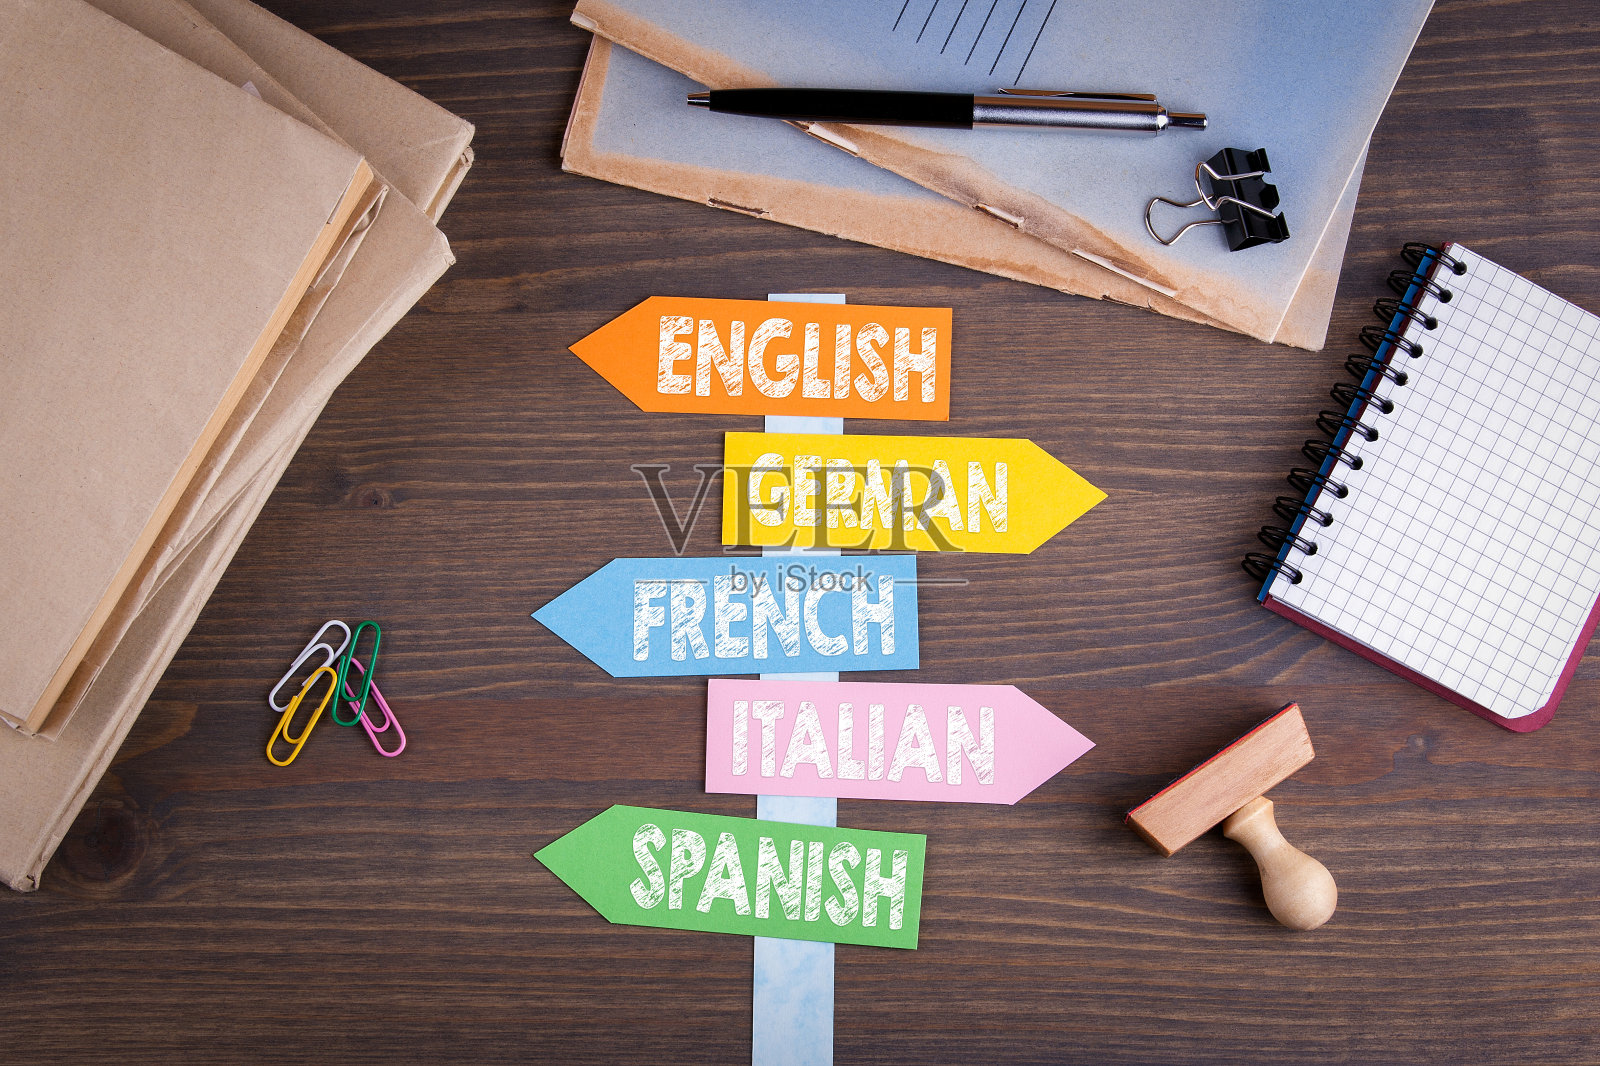 语言概念，英语，意大利语，德语，法语，西班牙语。木桌上的纸路标照片摄影图片